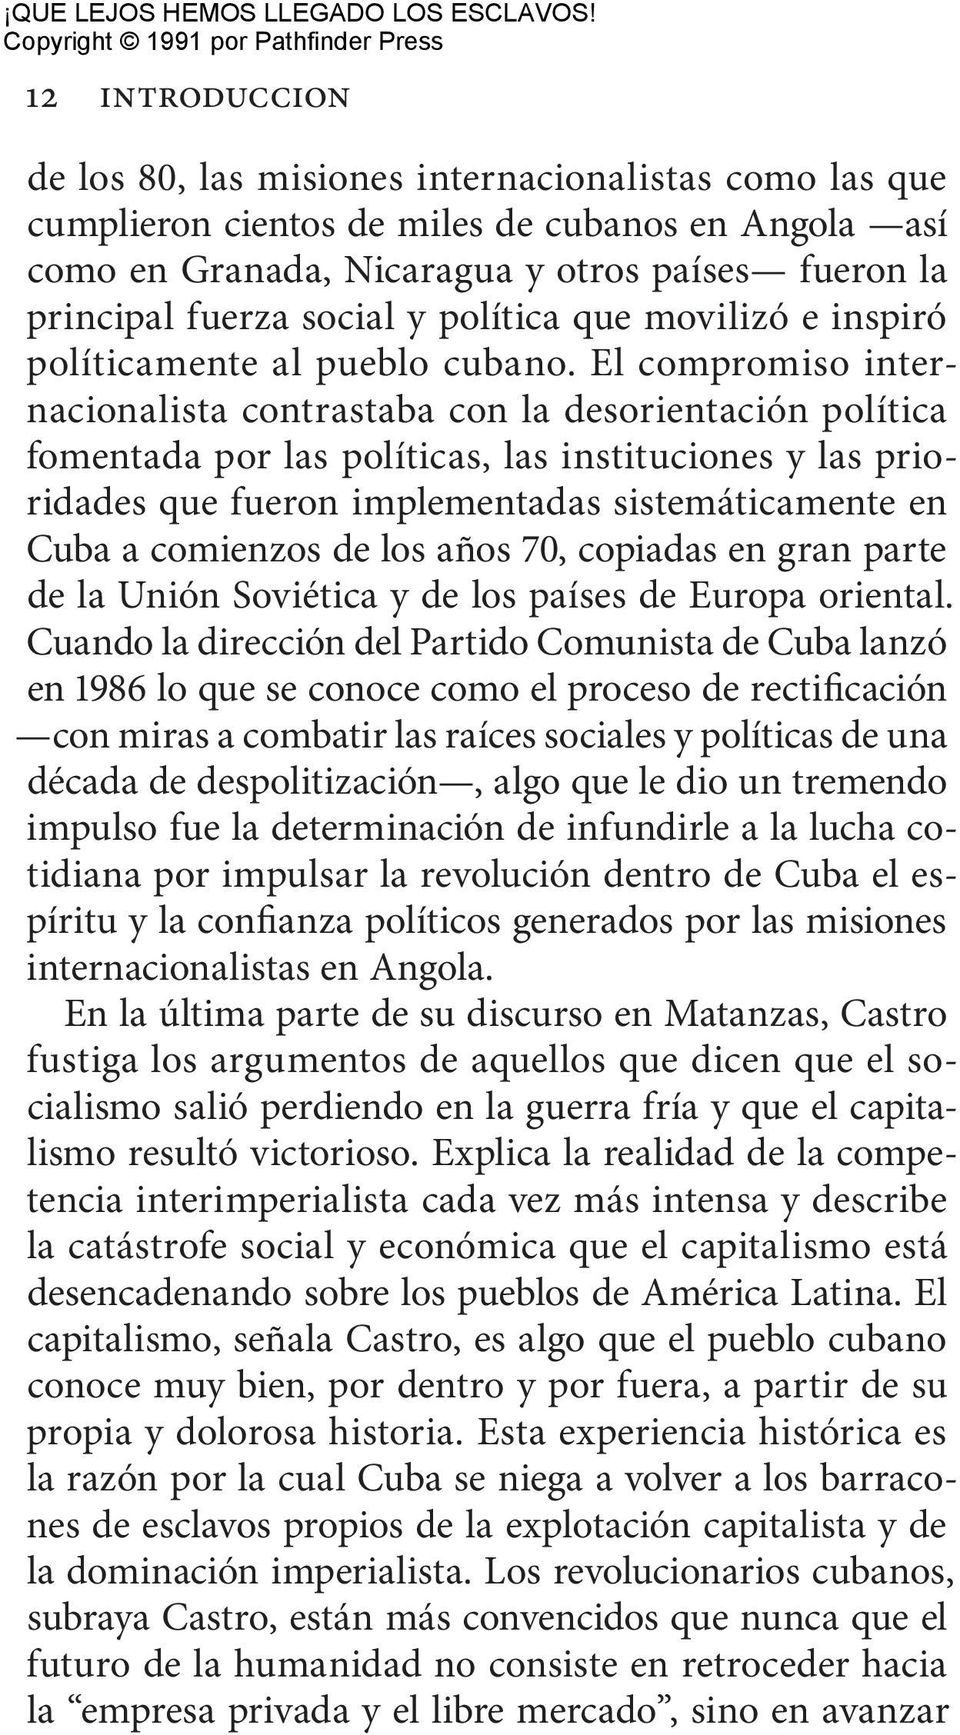 El compromiso internacionalista contrastaba con la desorientación política fomentada por las políticas, las instituciones y las prioridades que fueron implementadas sistemáticamente en Cuba a